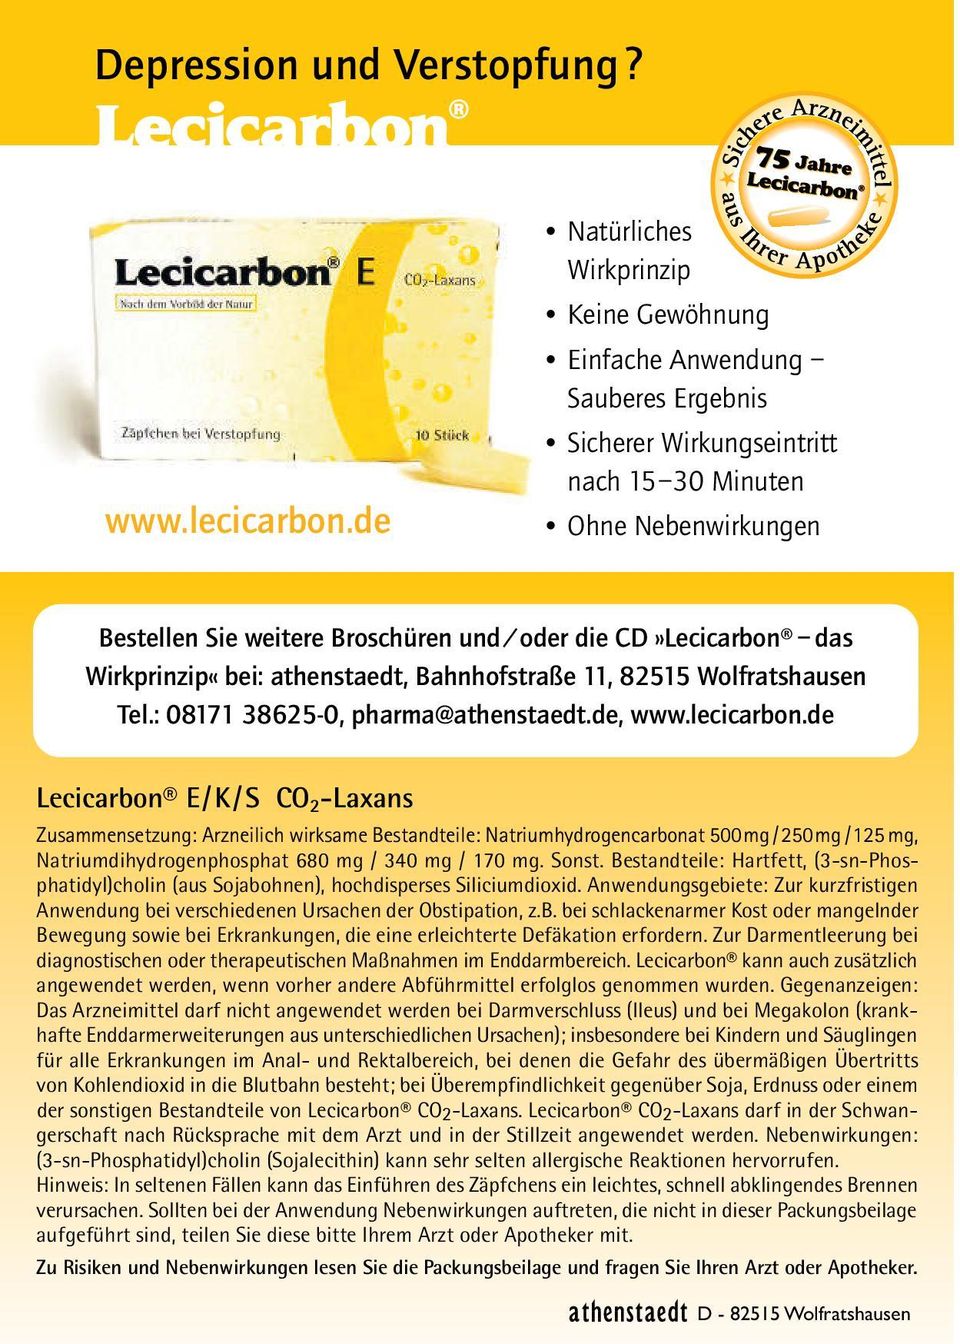 CD»Lecicarbon das Wirkprinzip«bei: athenstaedt, Bahnhofstraße 11, 82515 Wolfratshausen Tel.: 08171 38625-0, pharma@athenstaedt.de, www.lecicarbon.